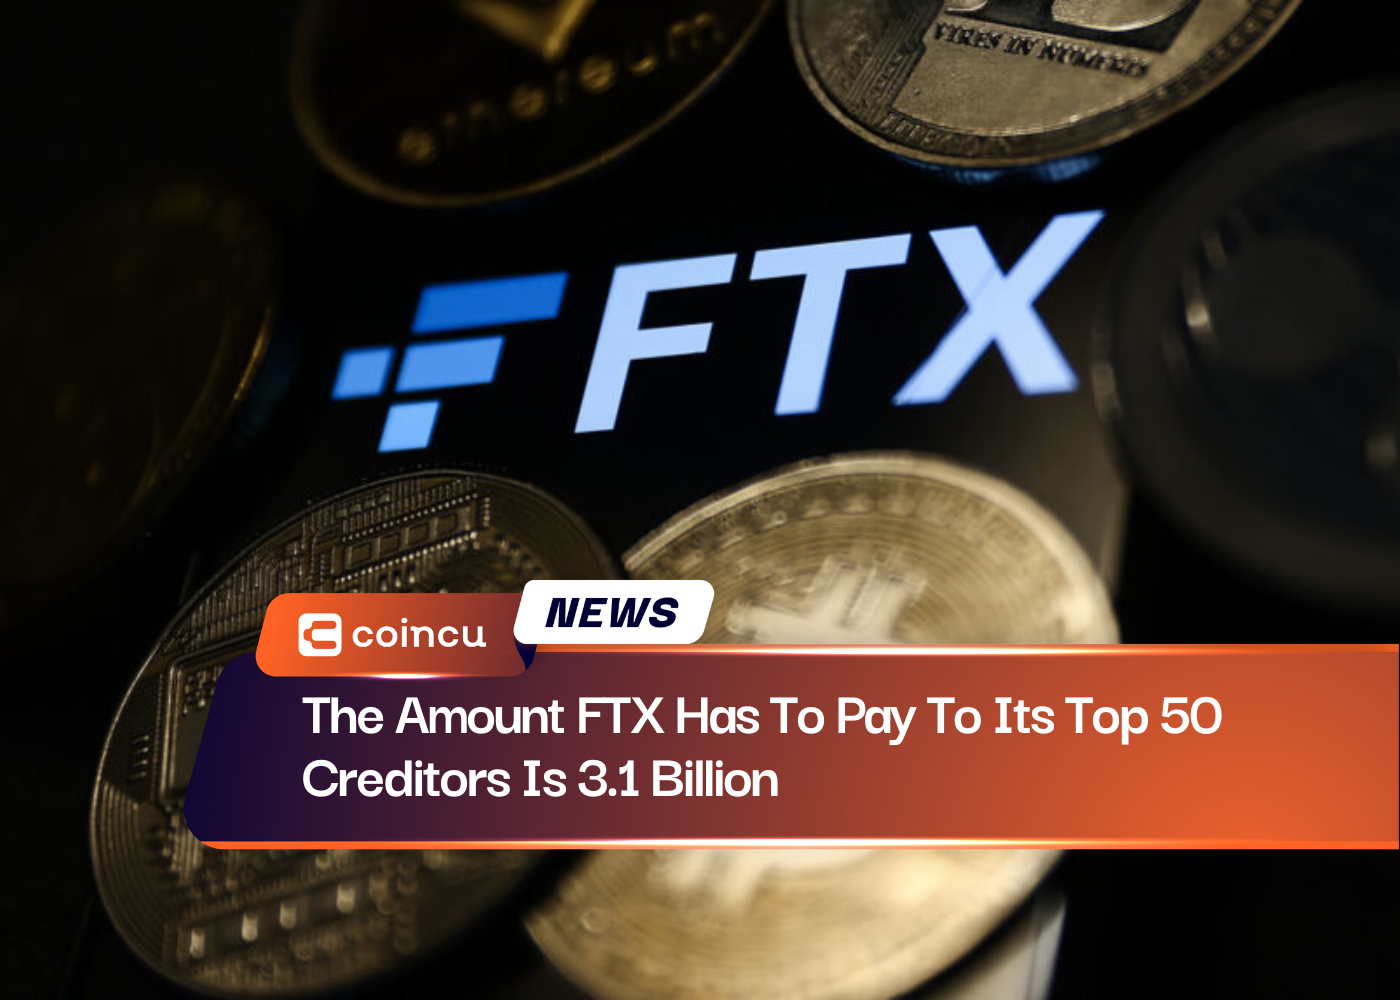 O valor que a FTX deve pagar aos seus 50 principais credores é de 3.1 bilhões